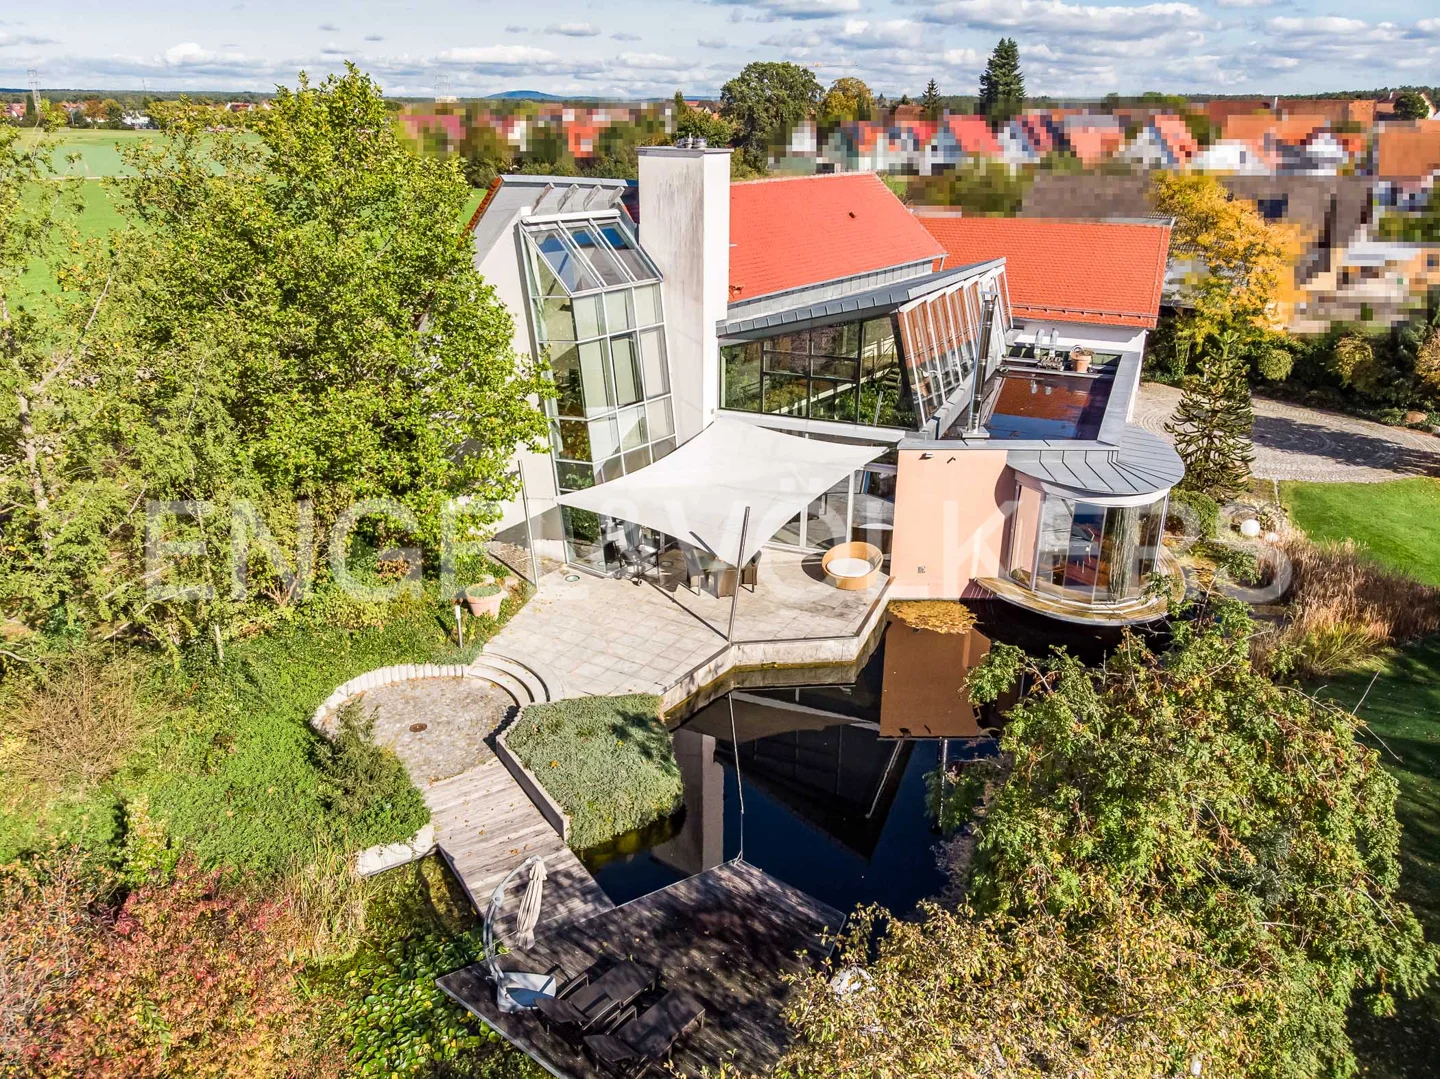 Architekten-Villa in Solitärlage nahe Nürnberg mit barrierefreiem Erdgeschoss